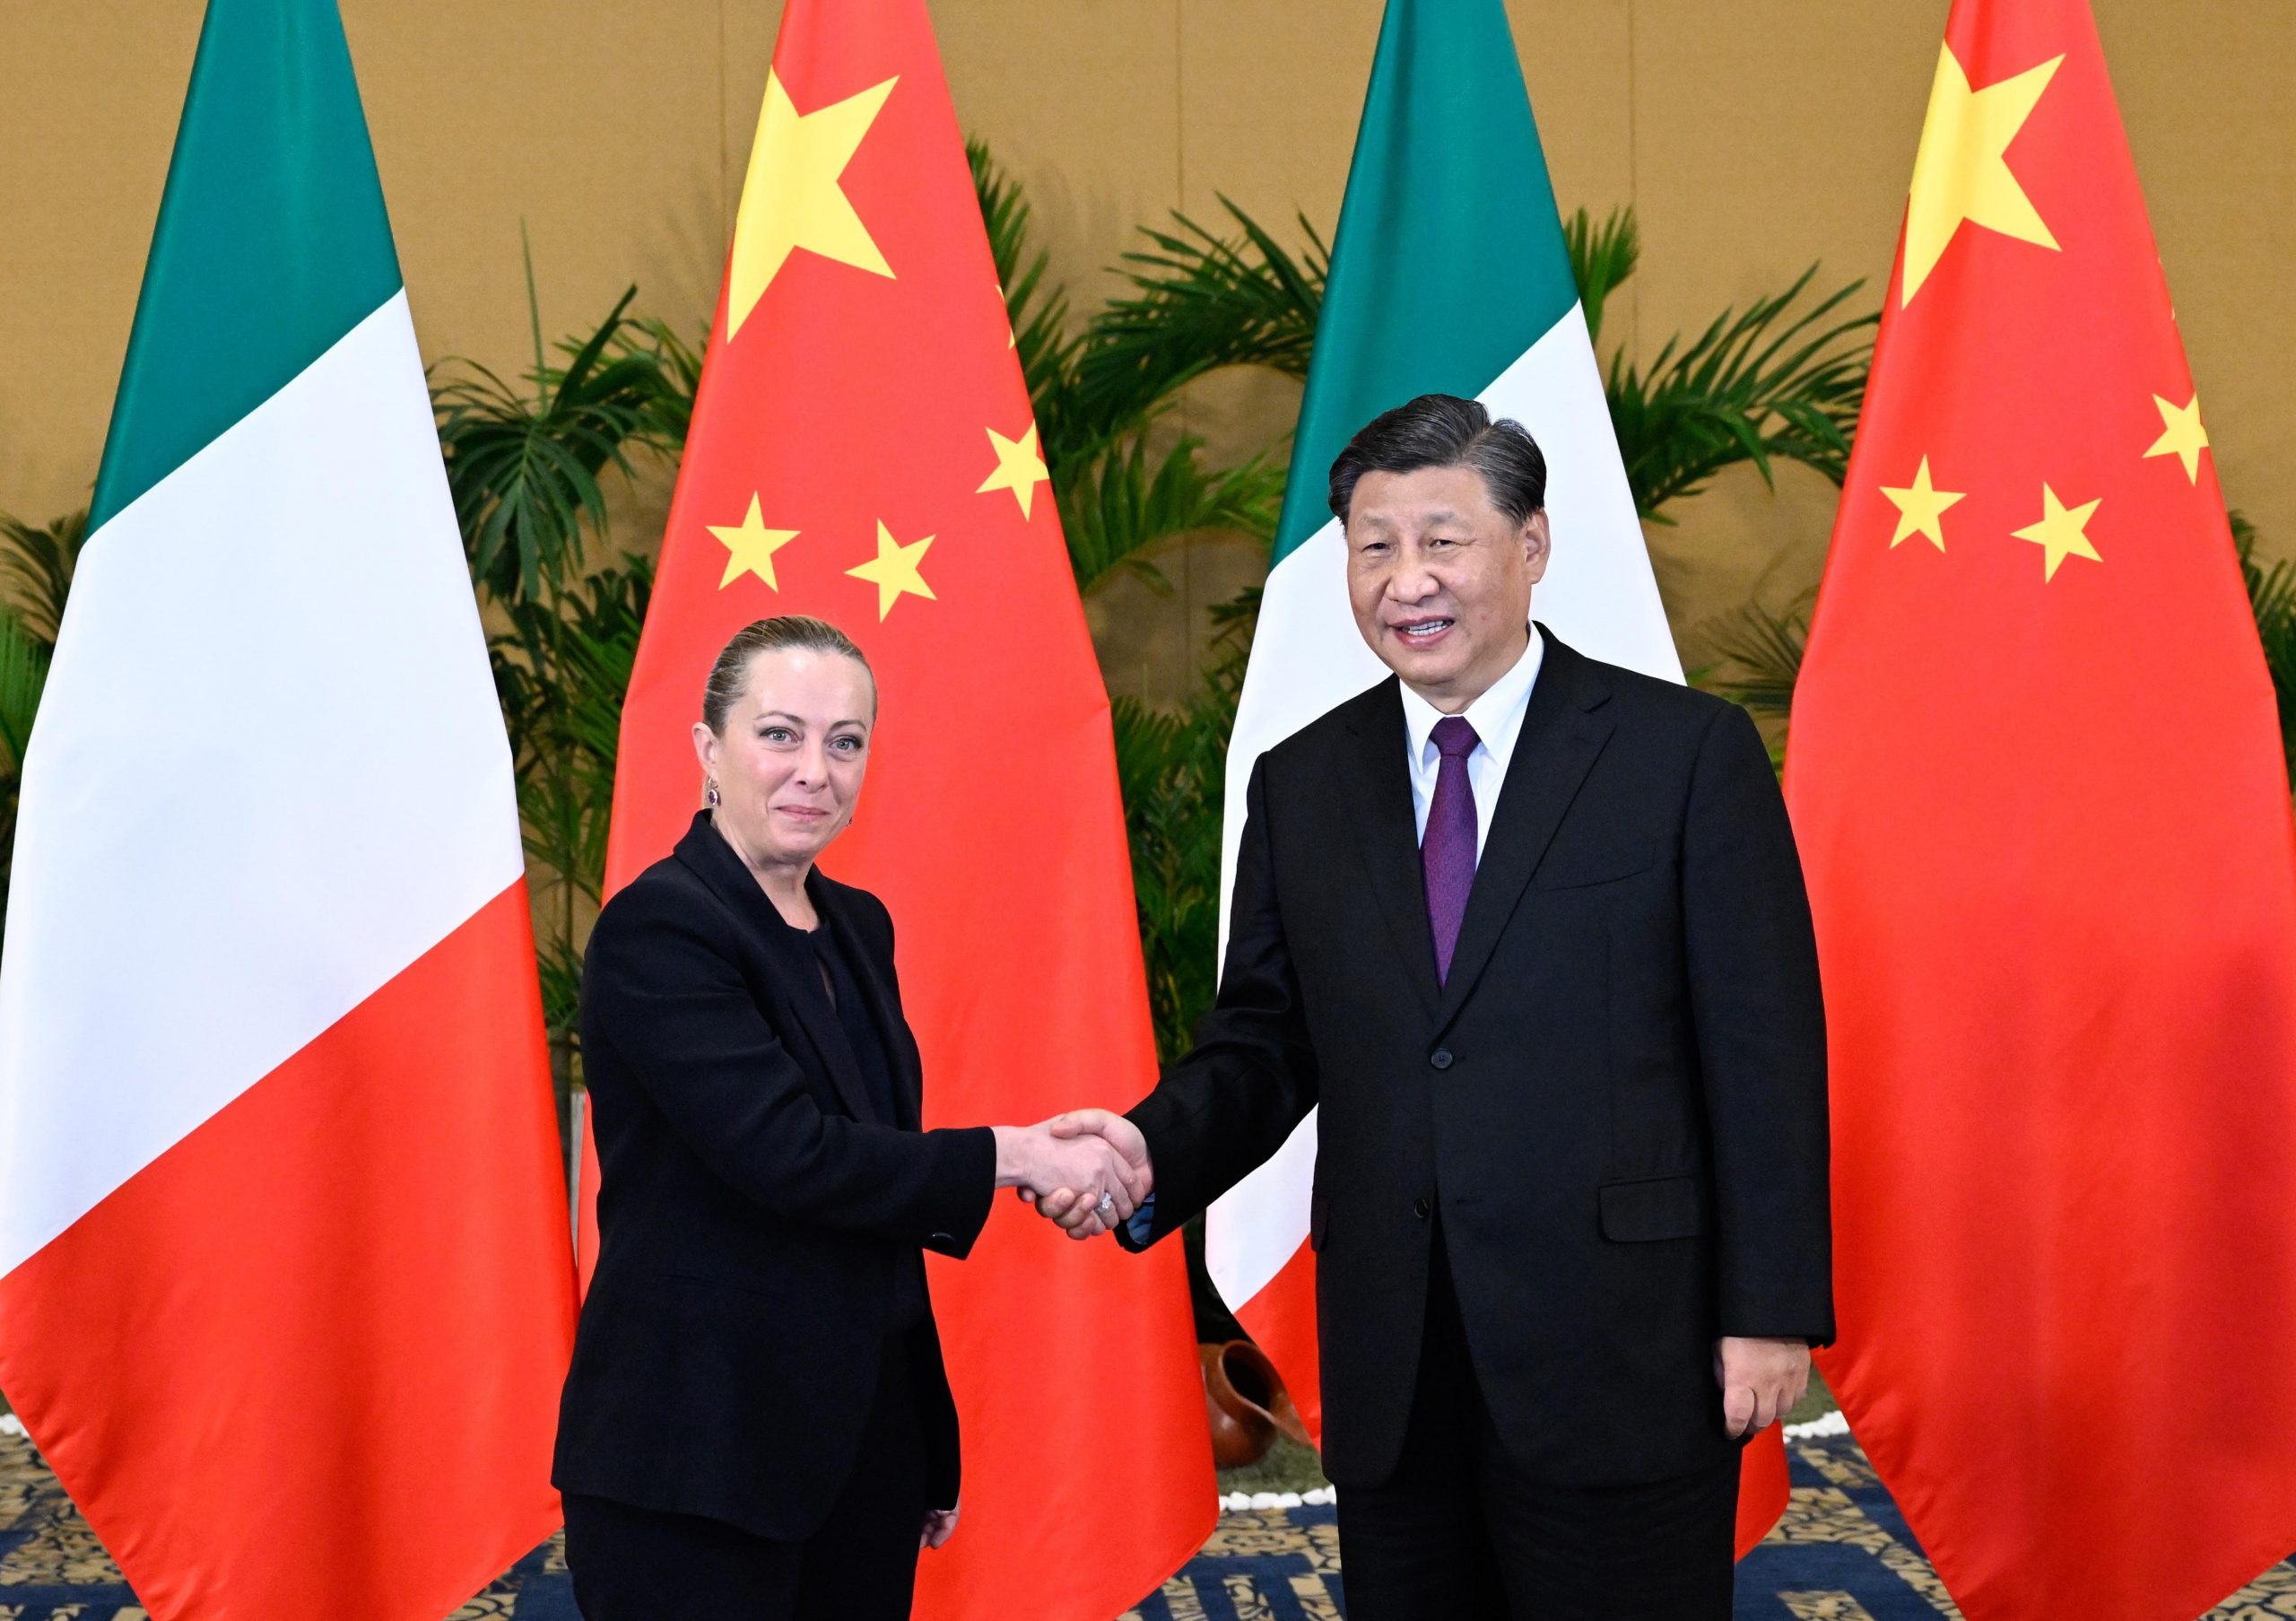 Xi incontra primo ministro italiano Meloni